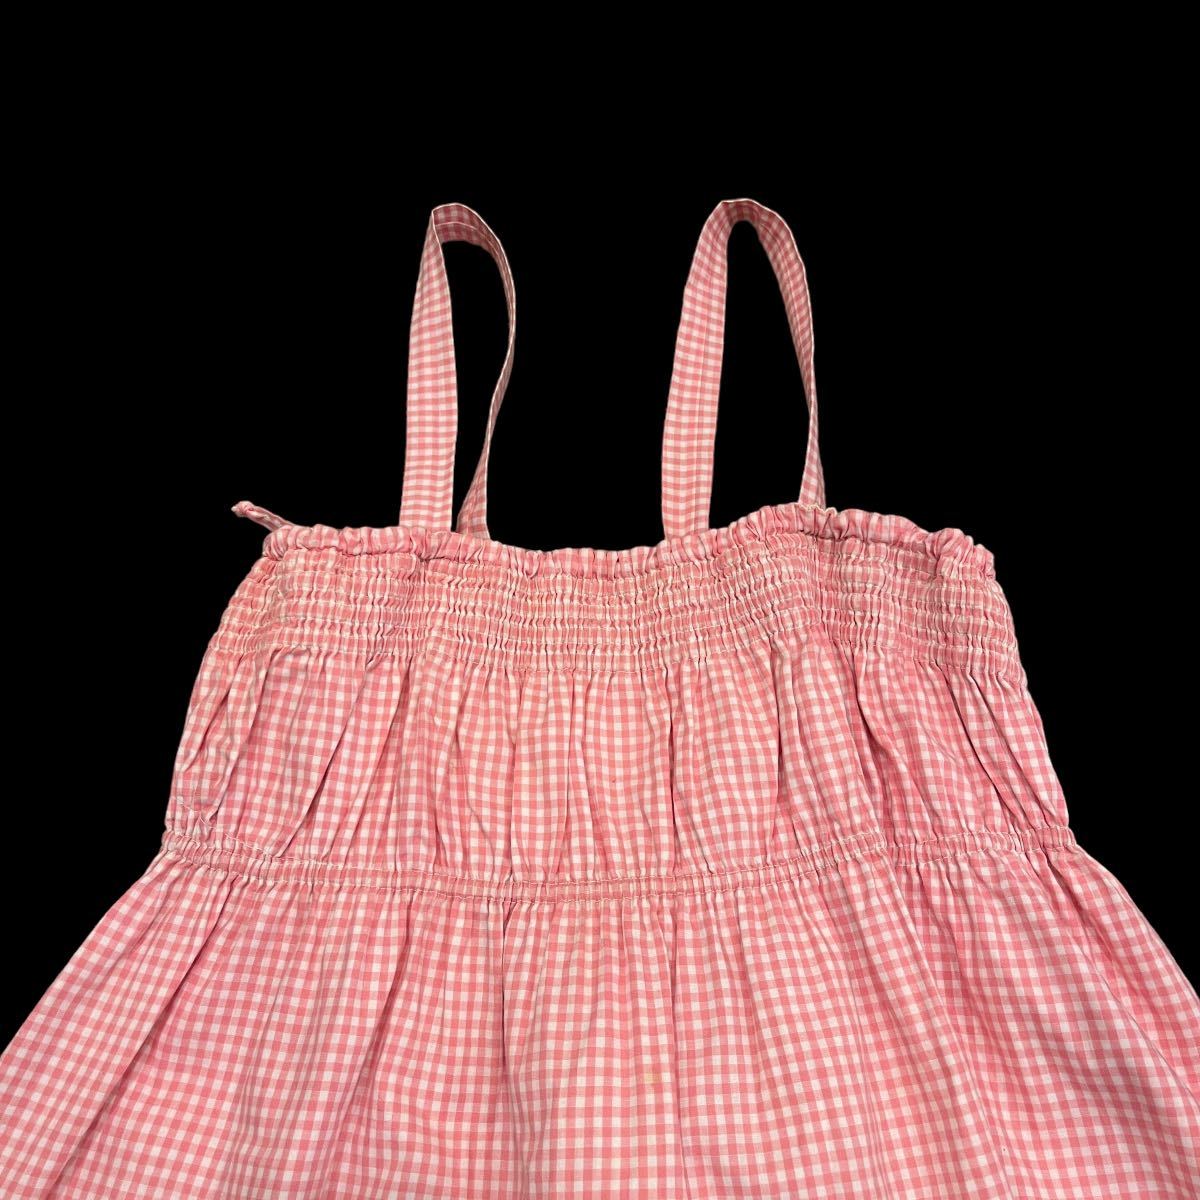  Vintage 50*s материнство выставить серебристый жевательная резинка проверка розовый 50 годы fif чай z контри-рок б/у одежда vintage